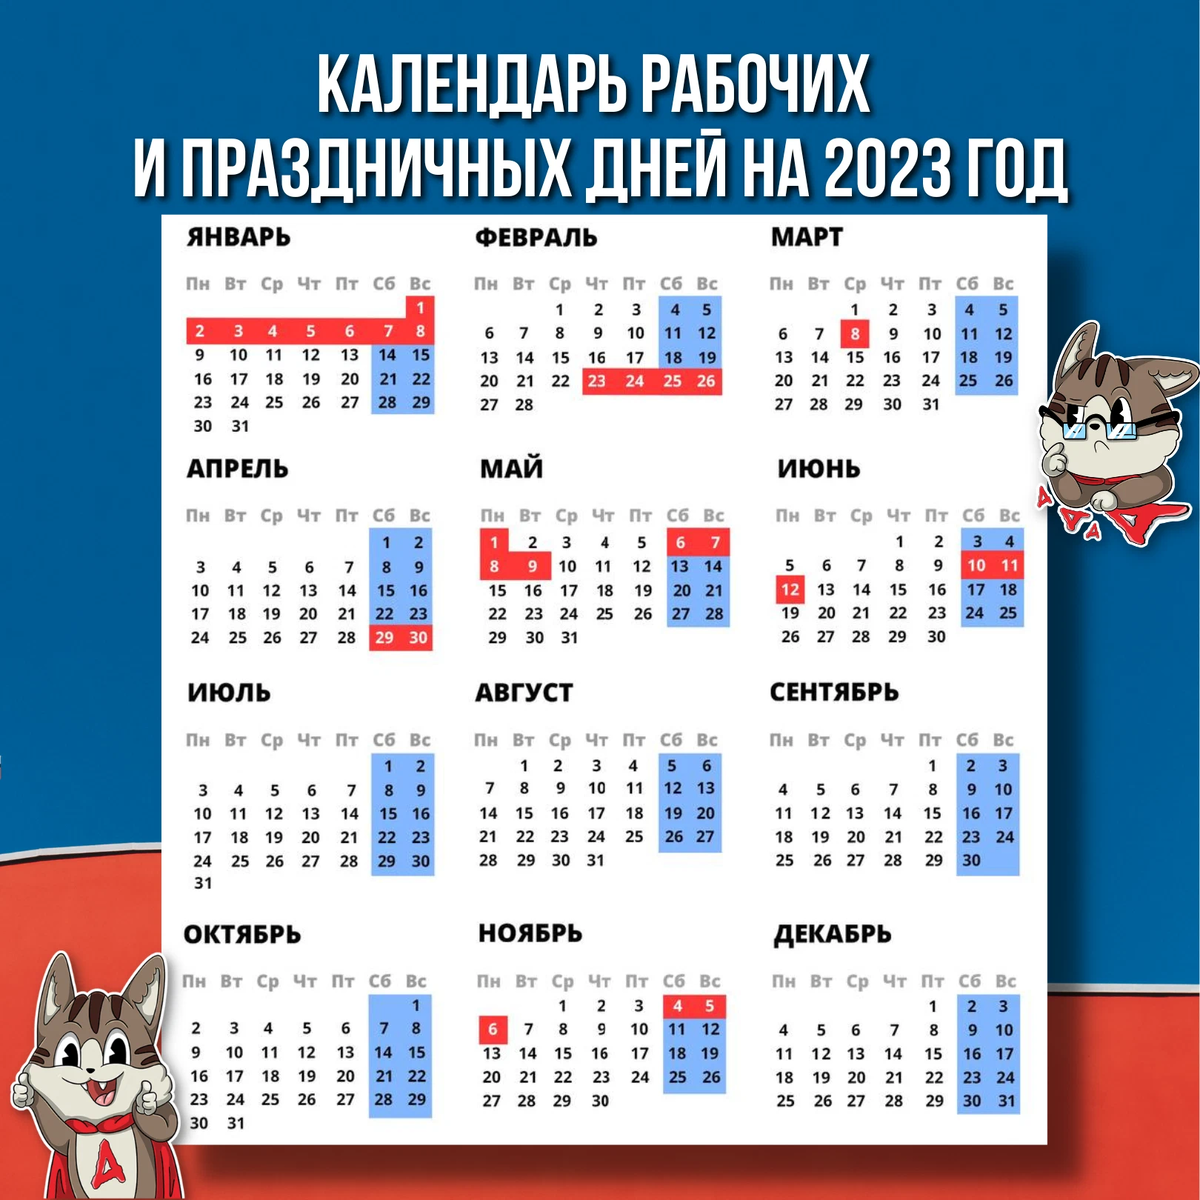 Правительство выходные 2023. Праздничные выходные в 2023 году. Календарные праздники на 2023 год. Новогодние выходные в 2023 году. Выходные и праздничные дни в 2023 году в России.